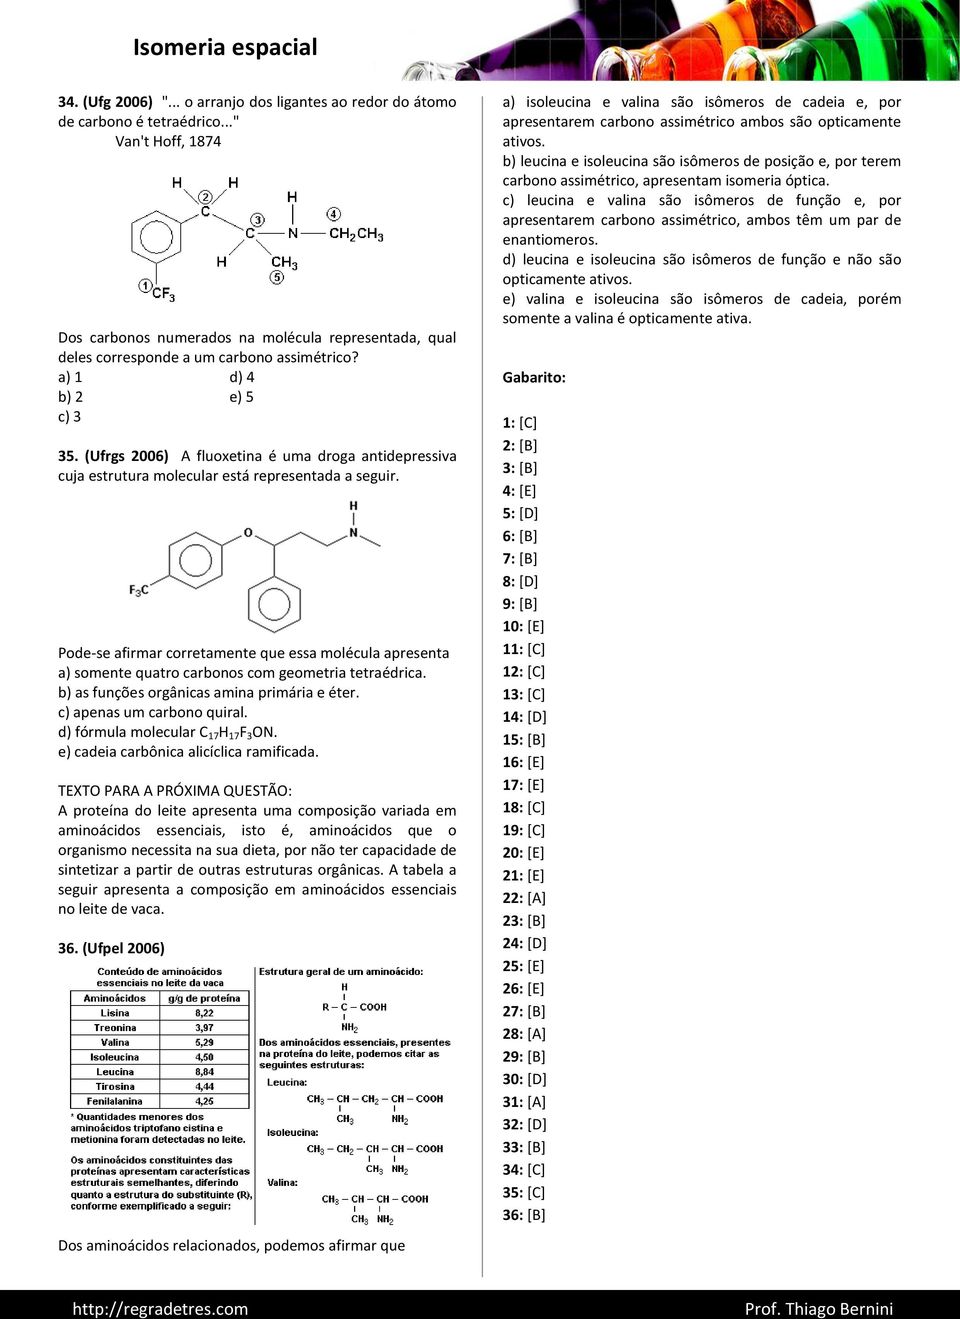 (Ufrgs 2006) A fluoxetina é uma droga antidepressiva cuja estrutura molecular está representada a seguir.